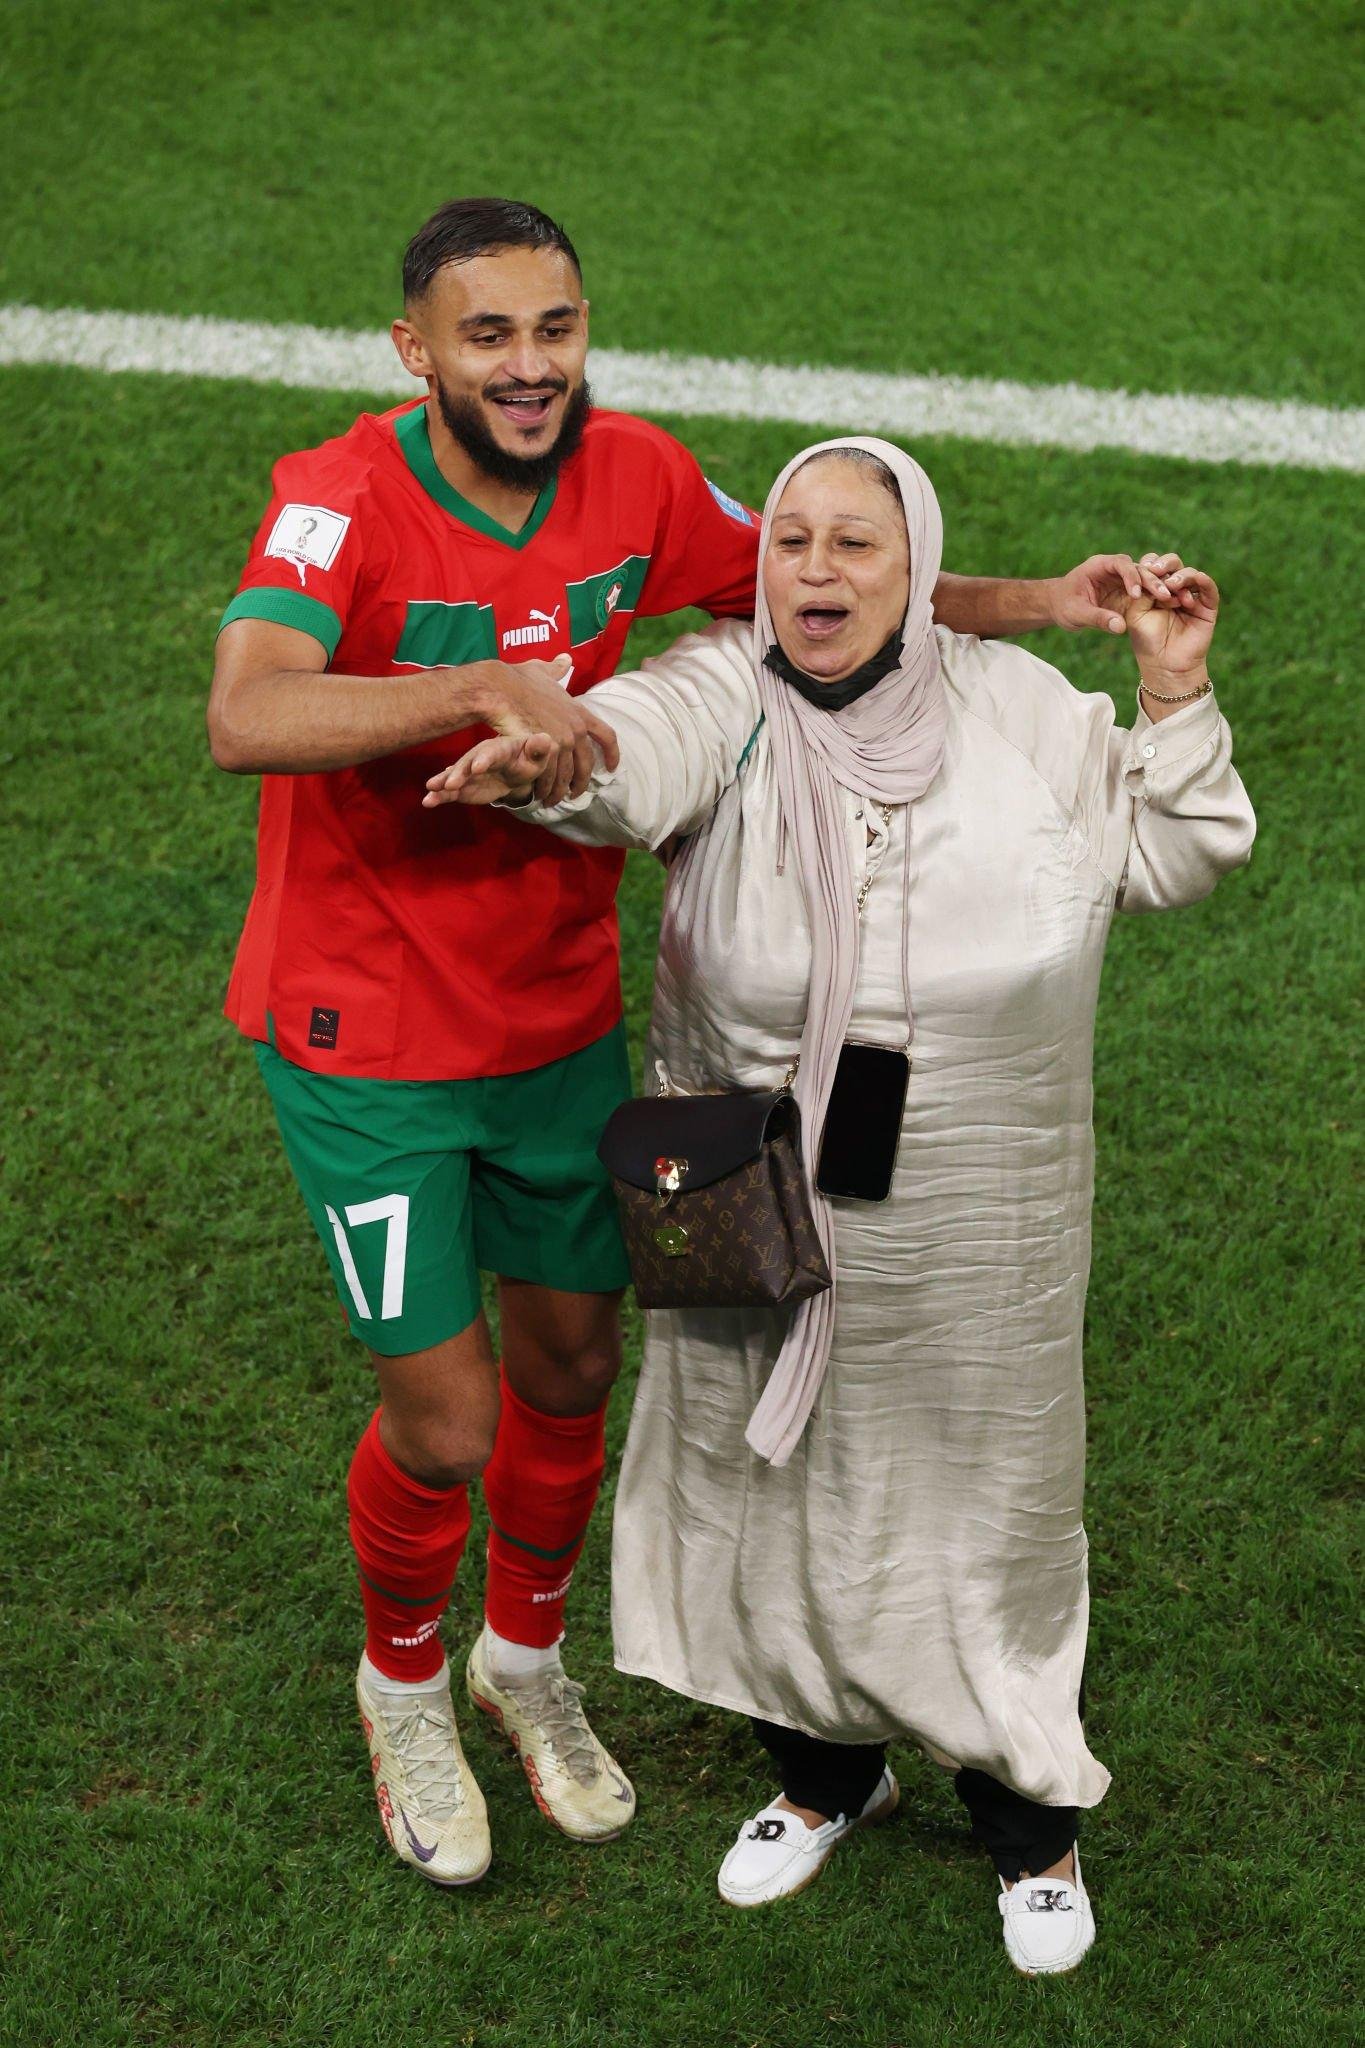 عاجل : المغرب تواصل كتابة التاريخ وتقصي البرتغال.. حسرة ودموع رونالدو وفرحة بوفال مع والدته داخل الملعب (فيديو وصور)